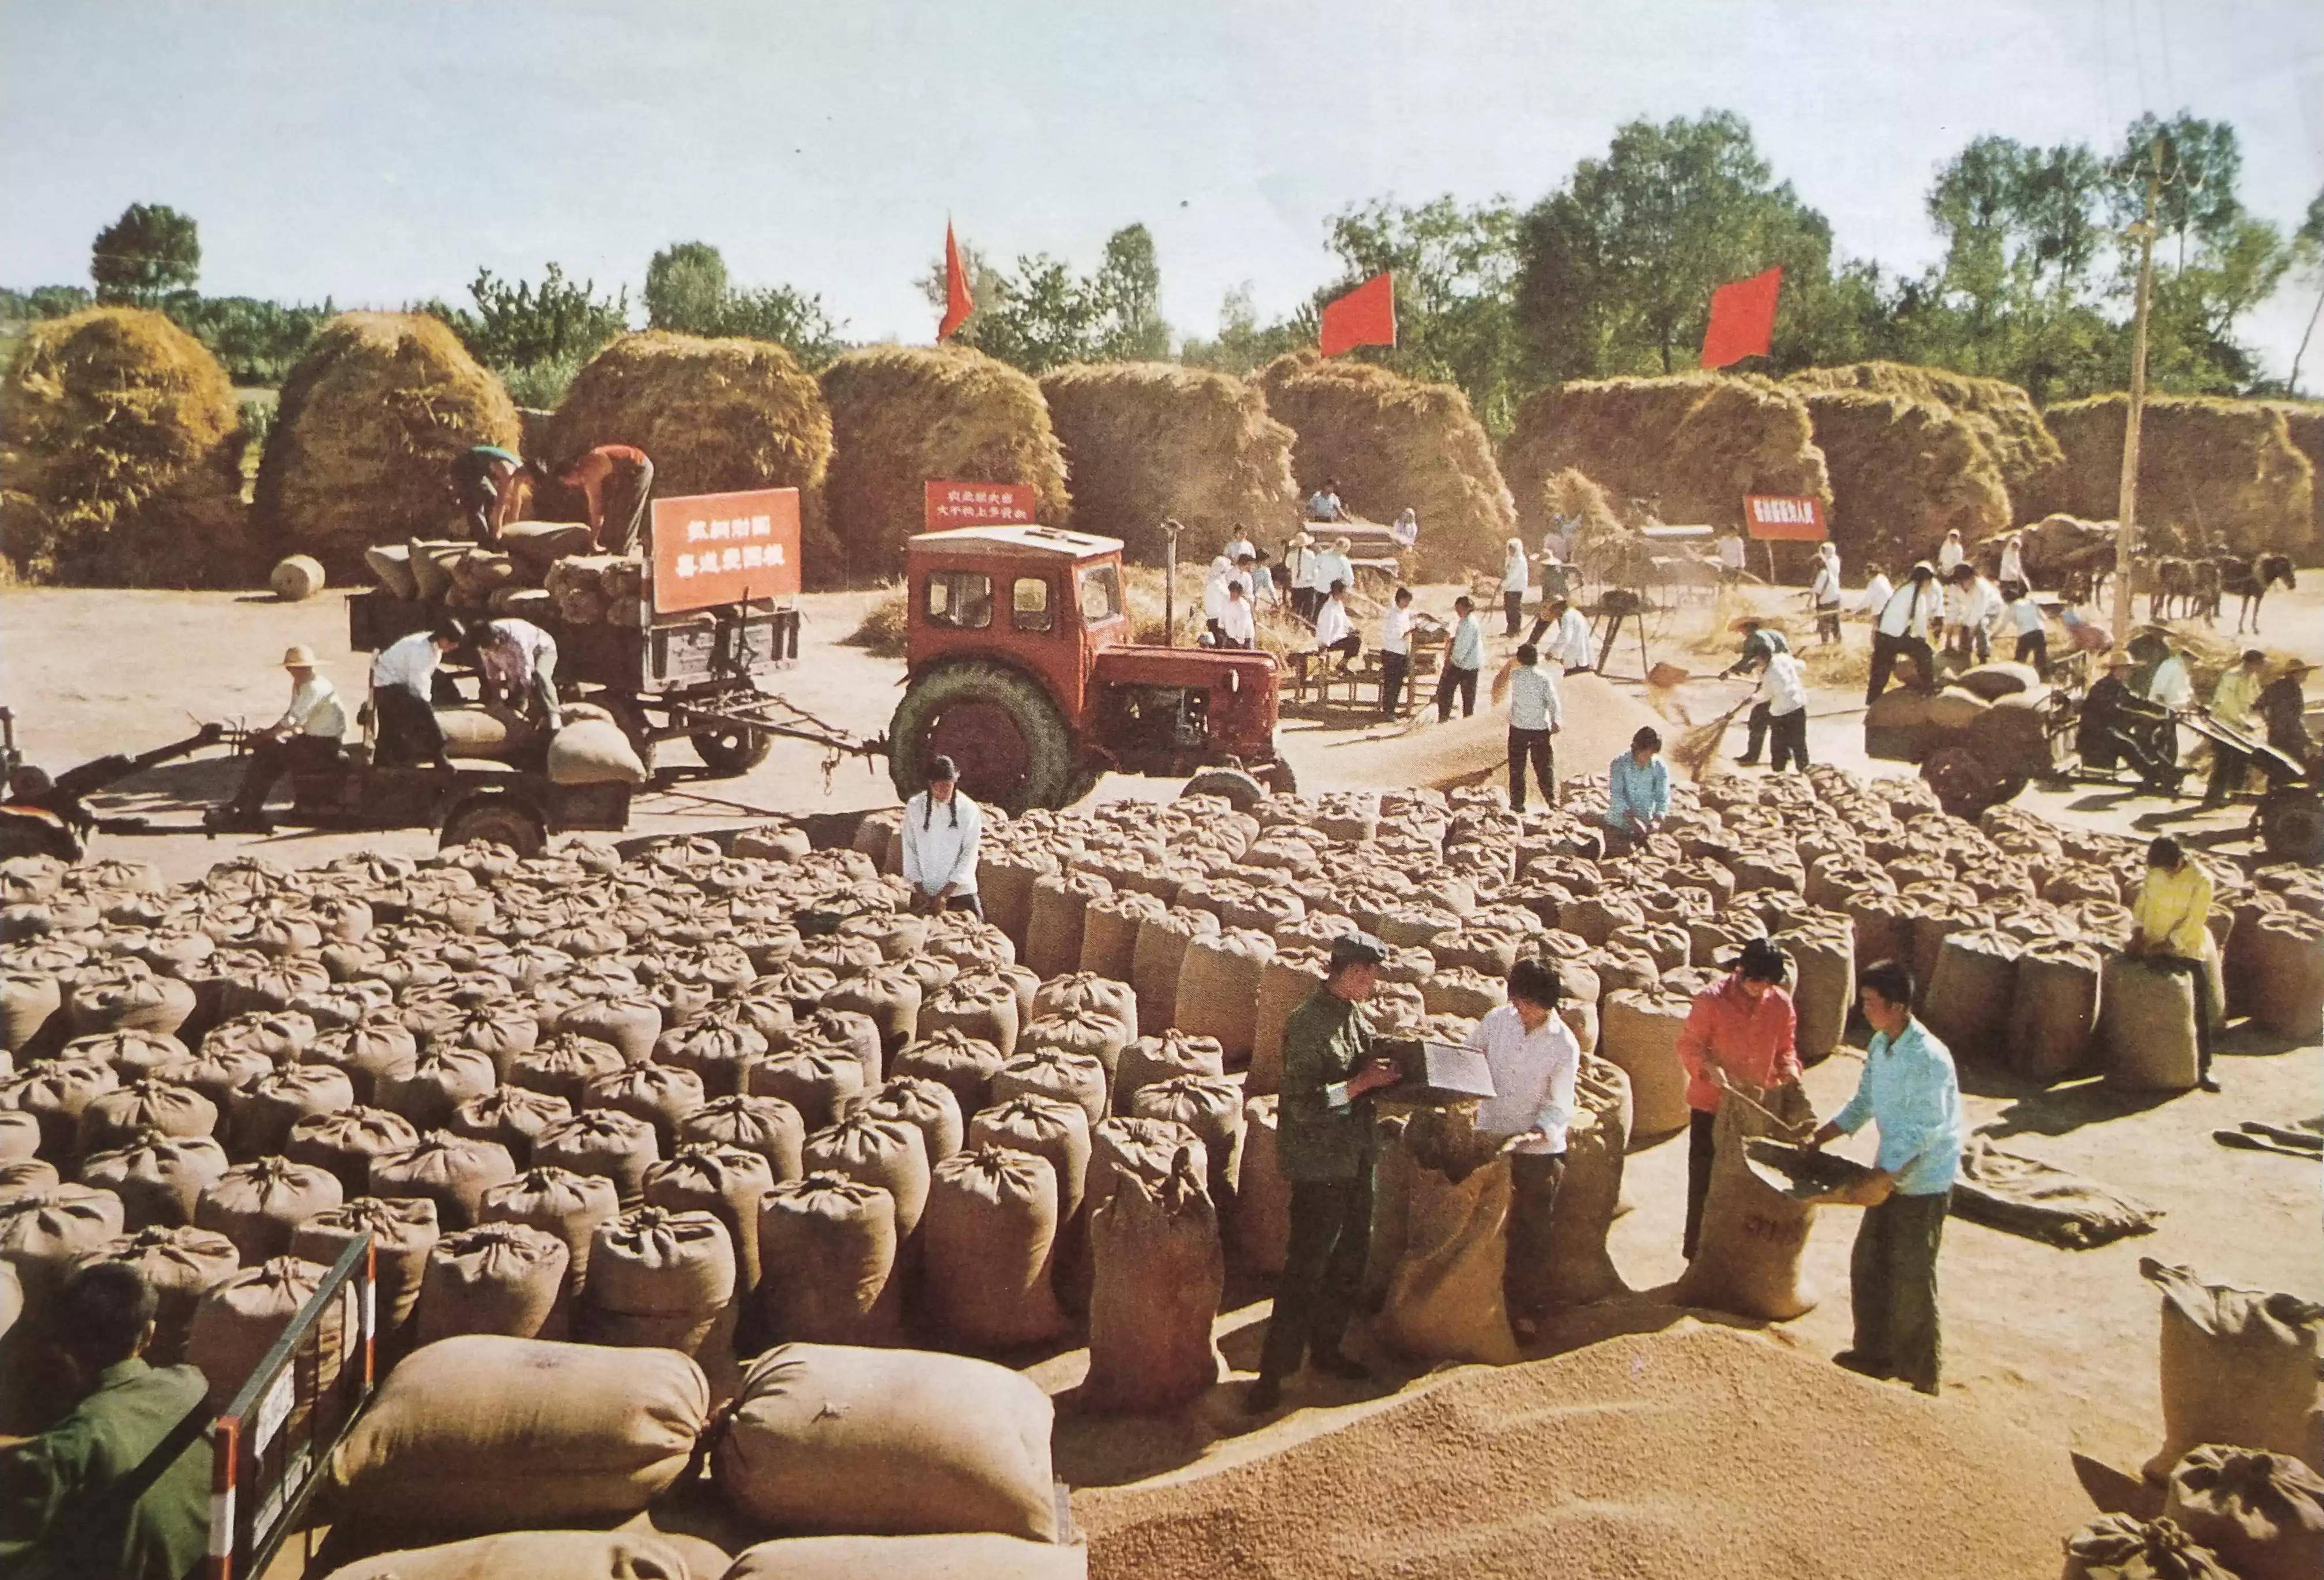 70年代农民劳动的图片图片